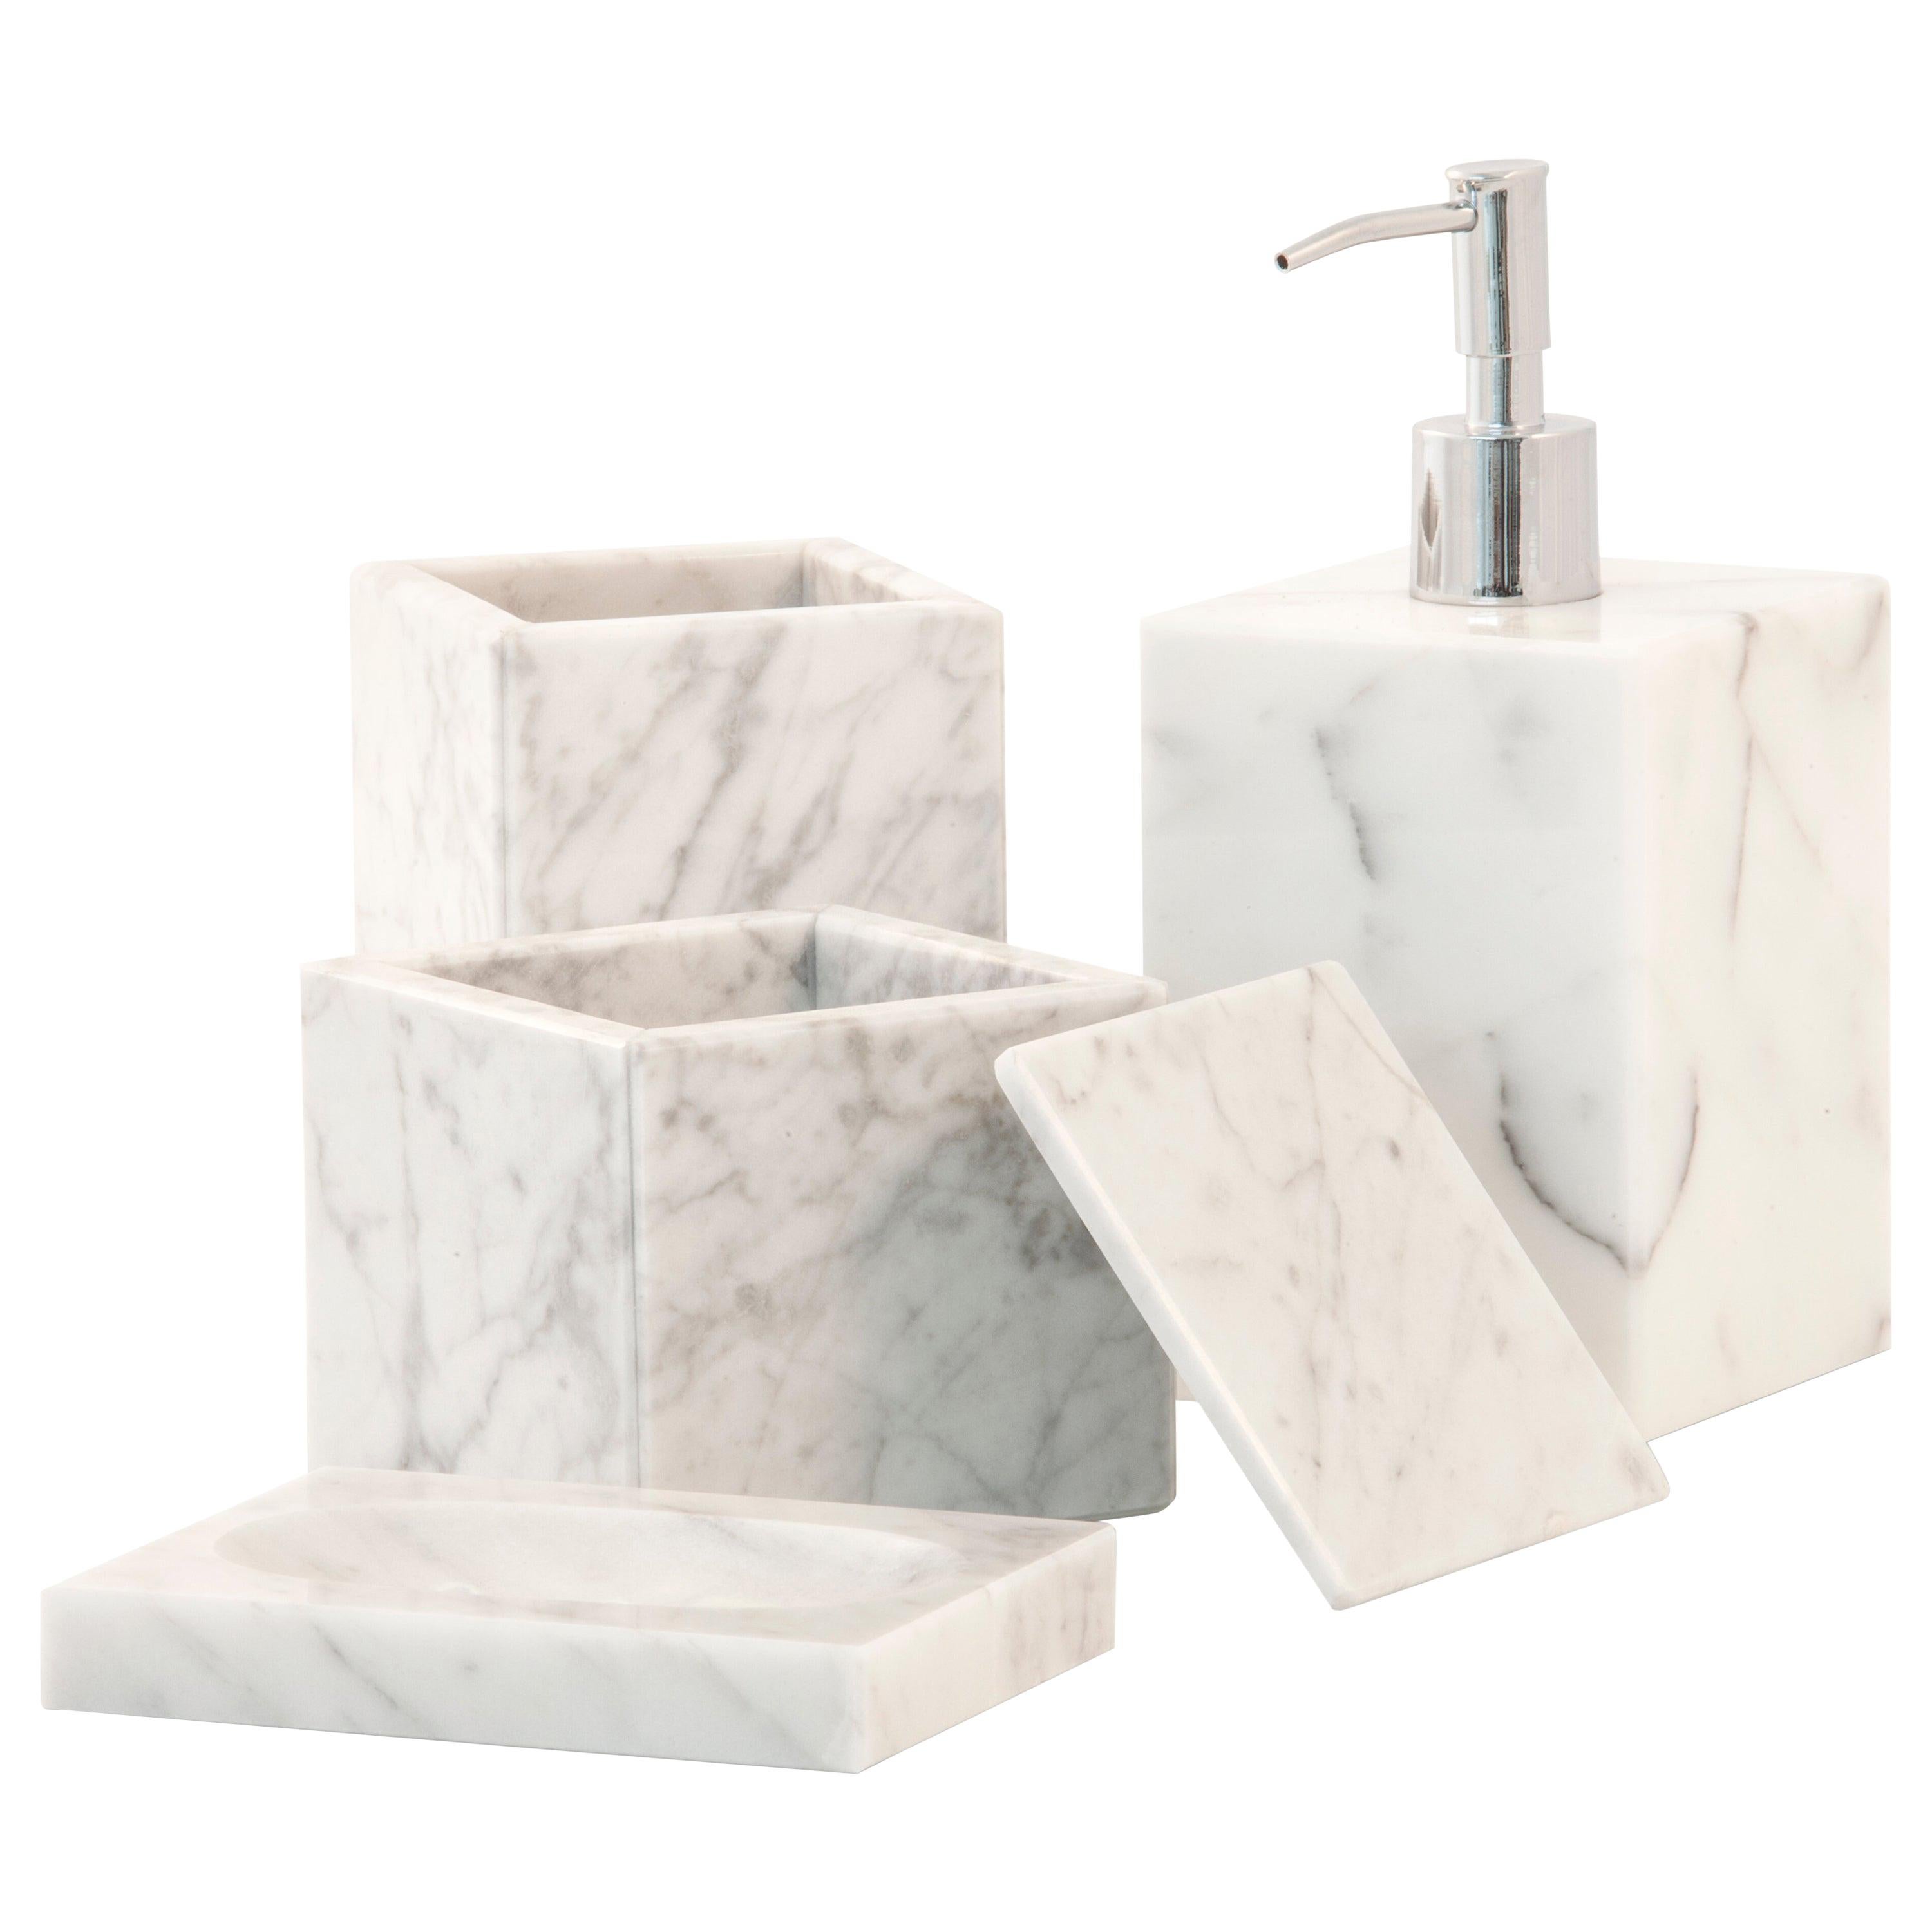 Handgefertigtes, quadratisches Set für Bad aus weißem Carrara-Marmor